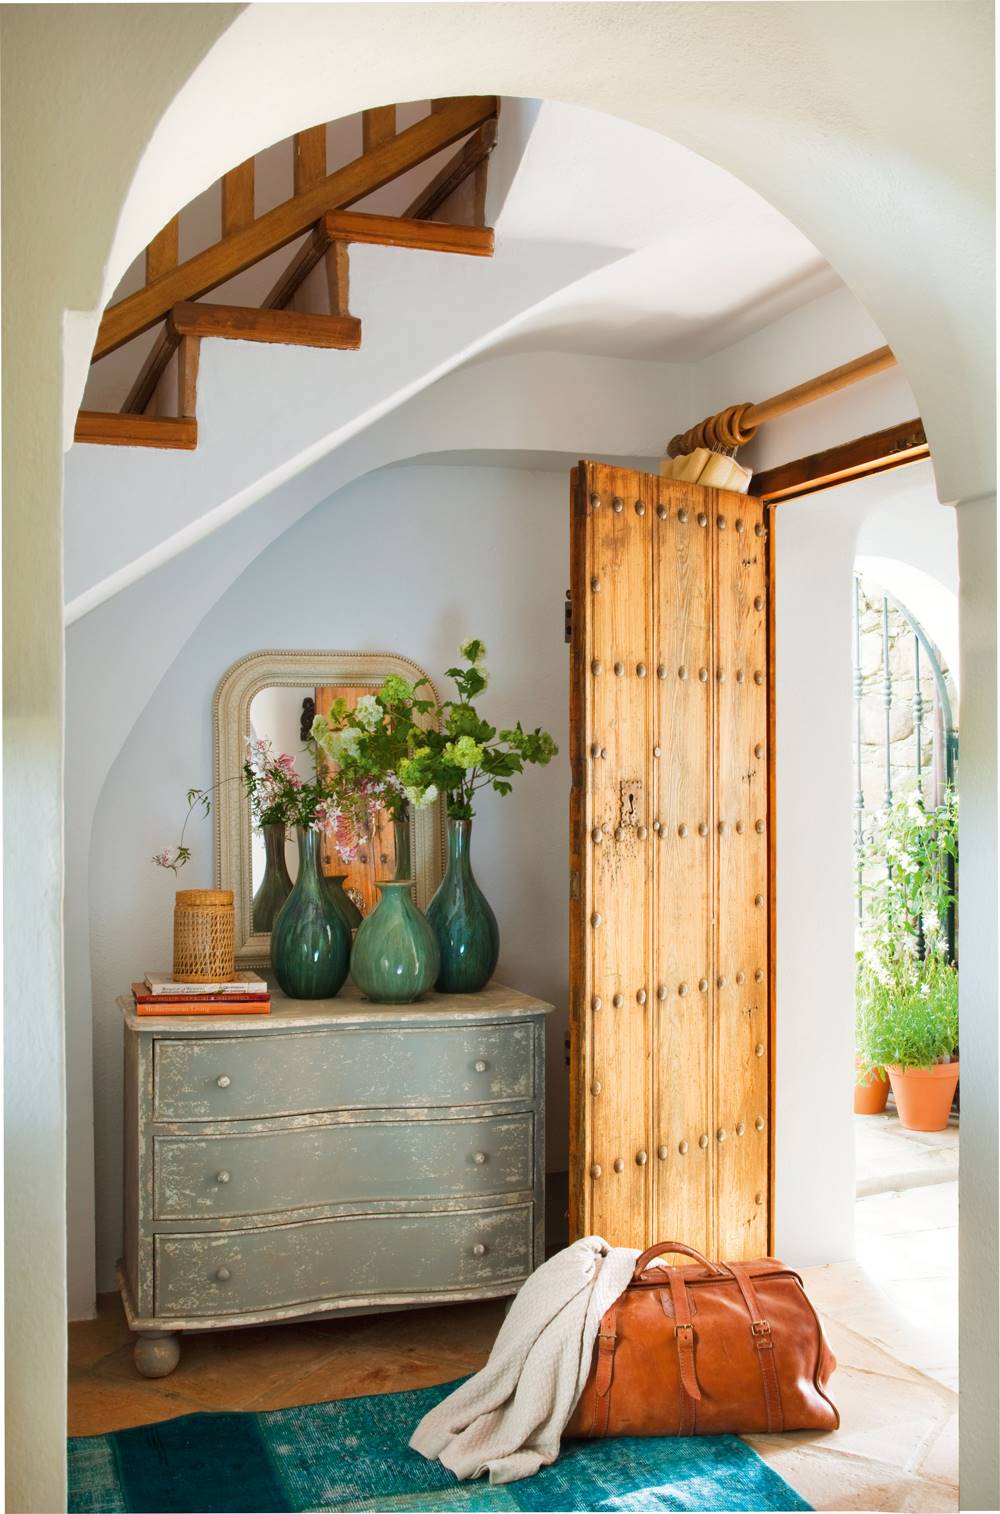 Recibidor rústico con puerta de madera, cómoda pintada y alfombra azul (00345177)